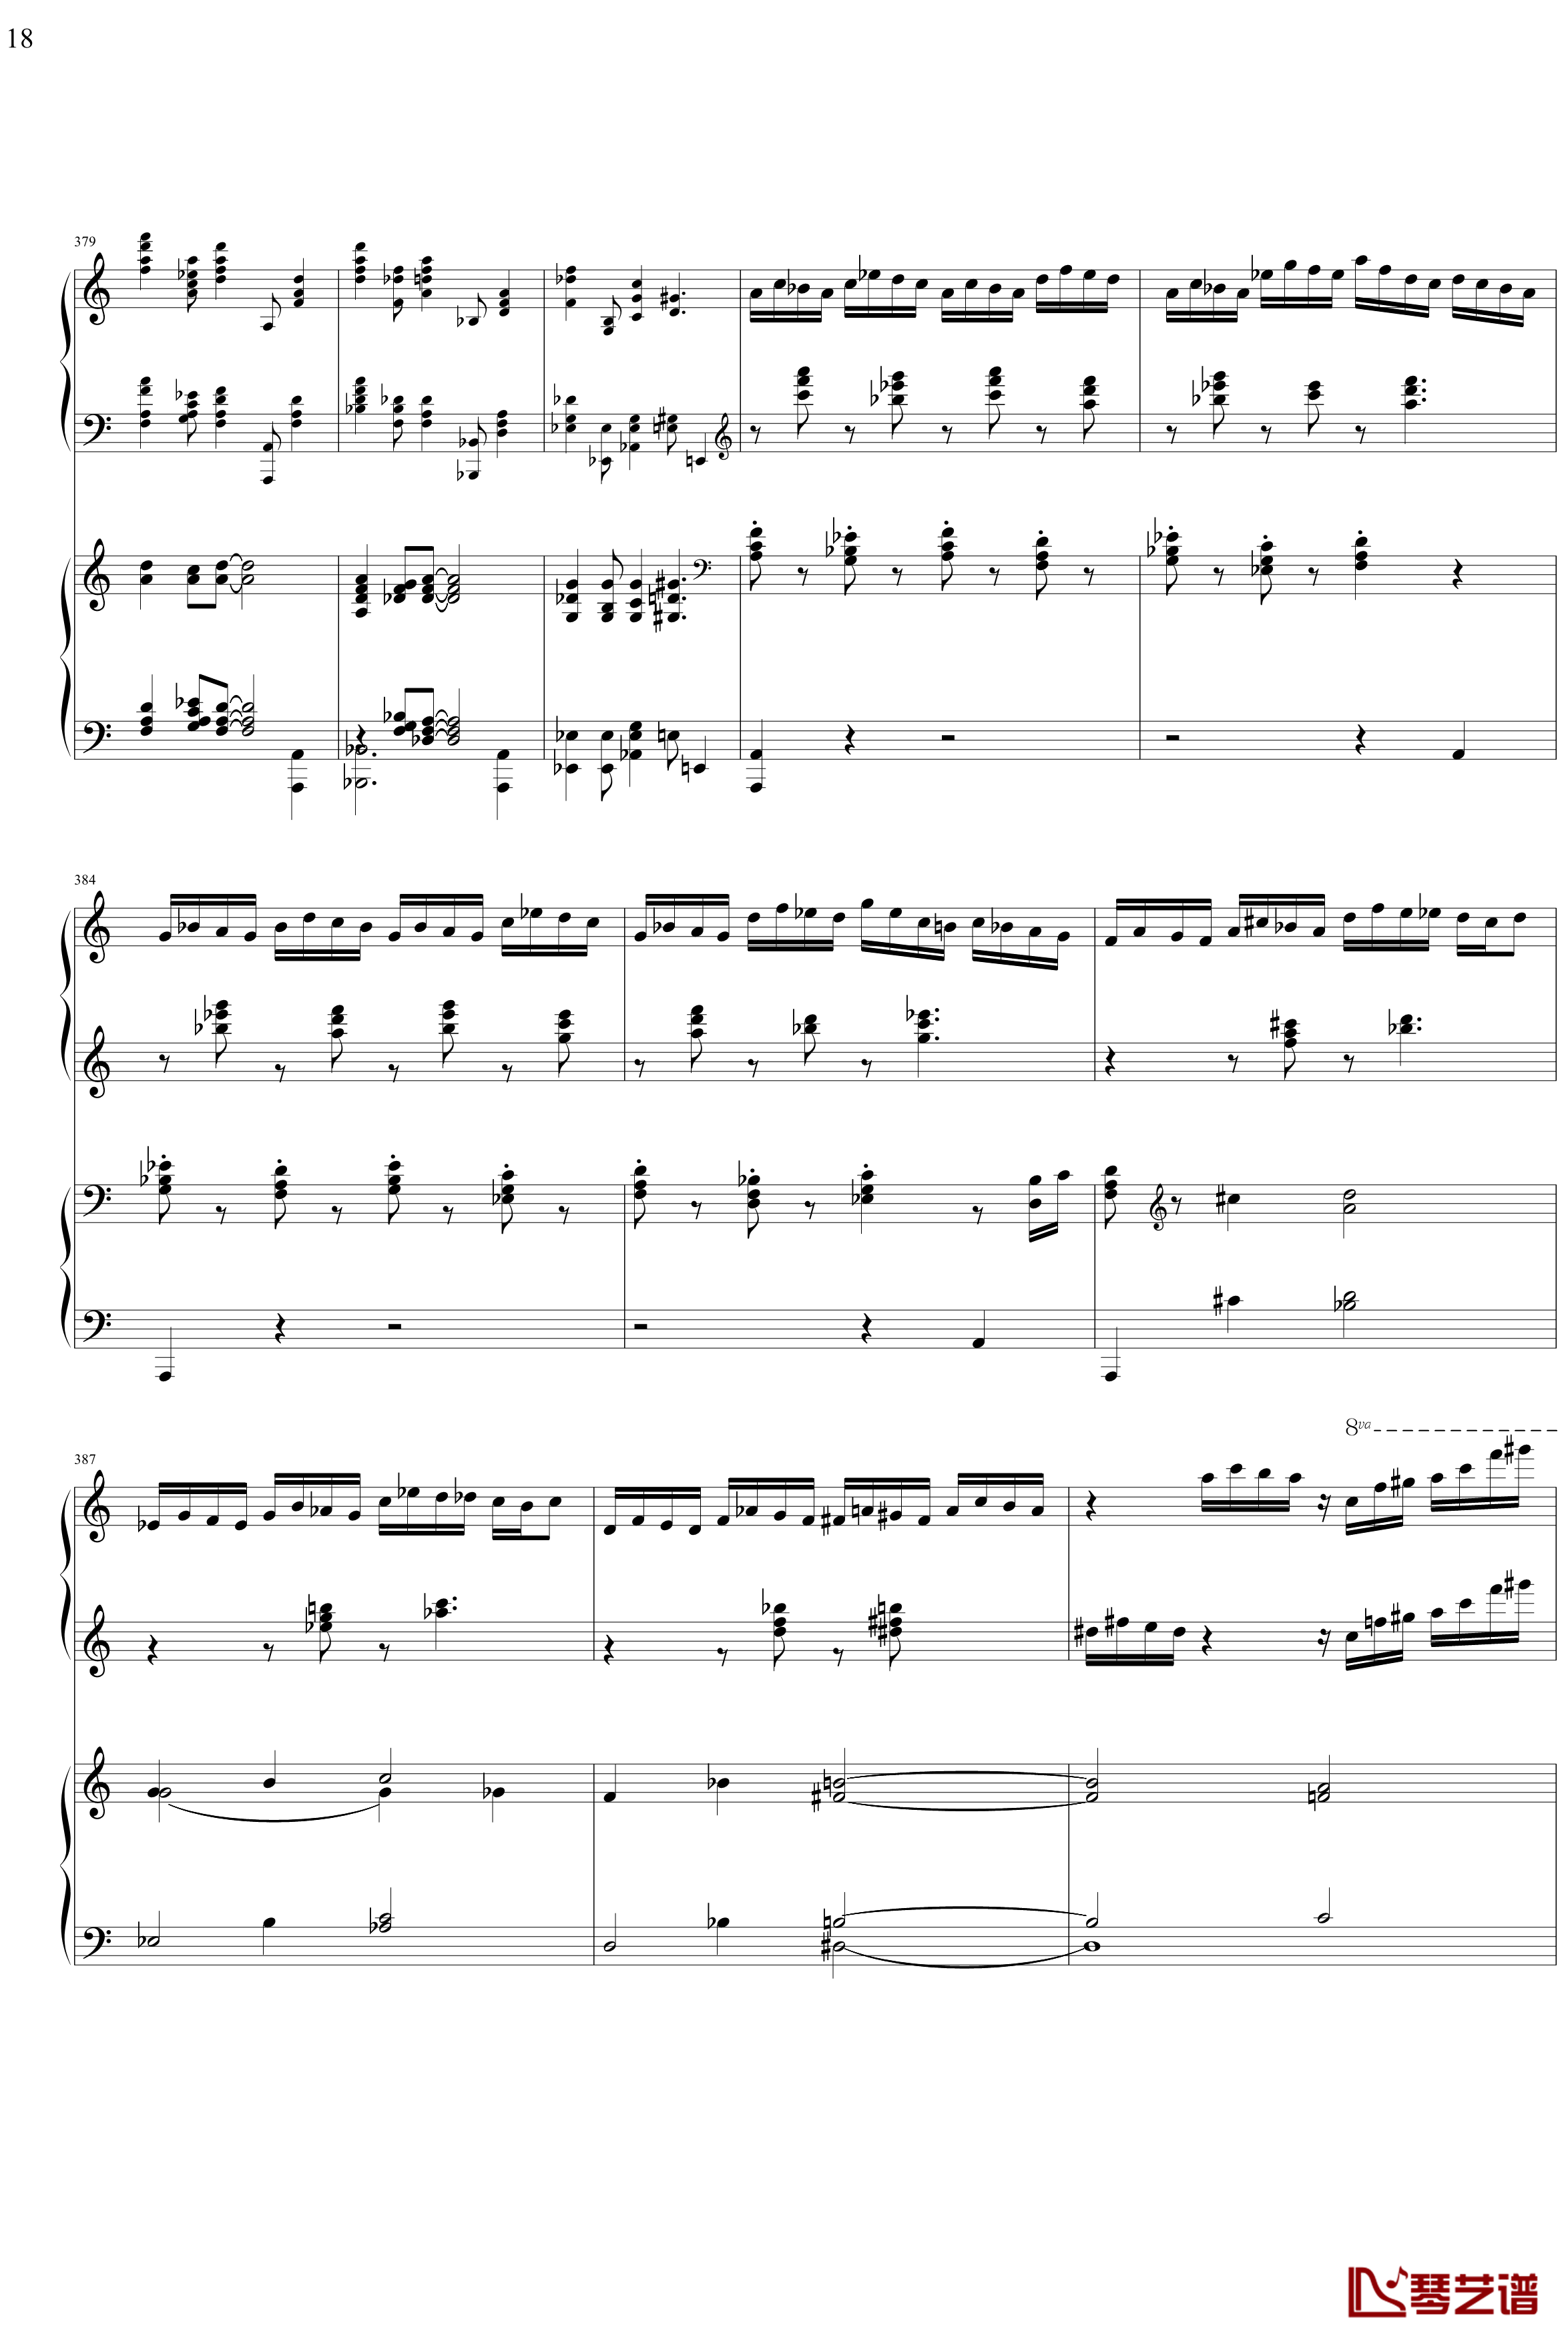 帕格尼主题狂想曲钢琴谱-1~10变奏-拉赫马尼若夫18